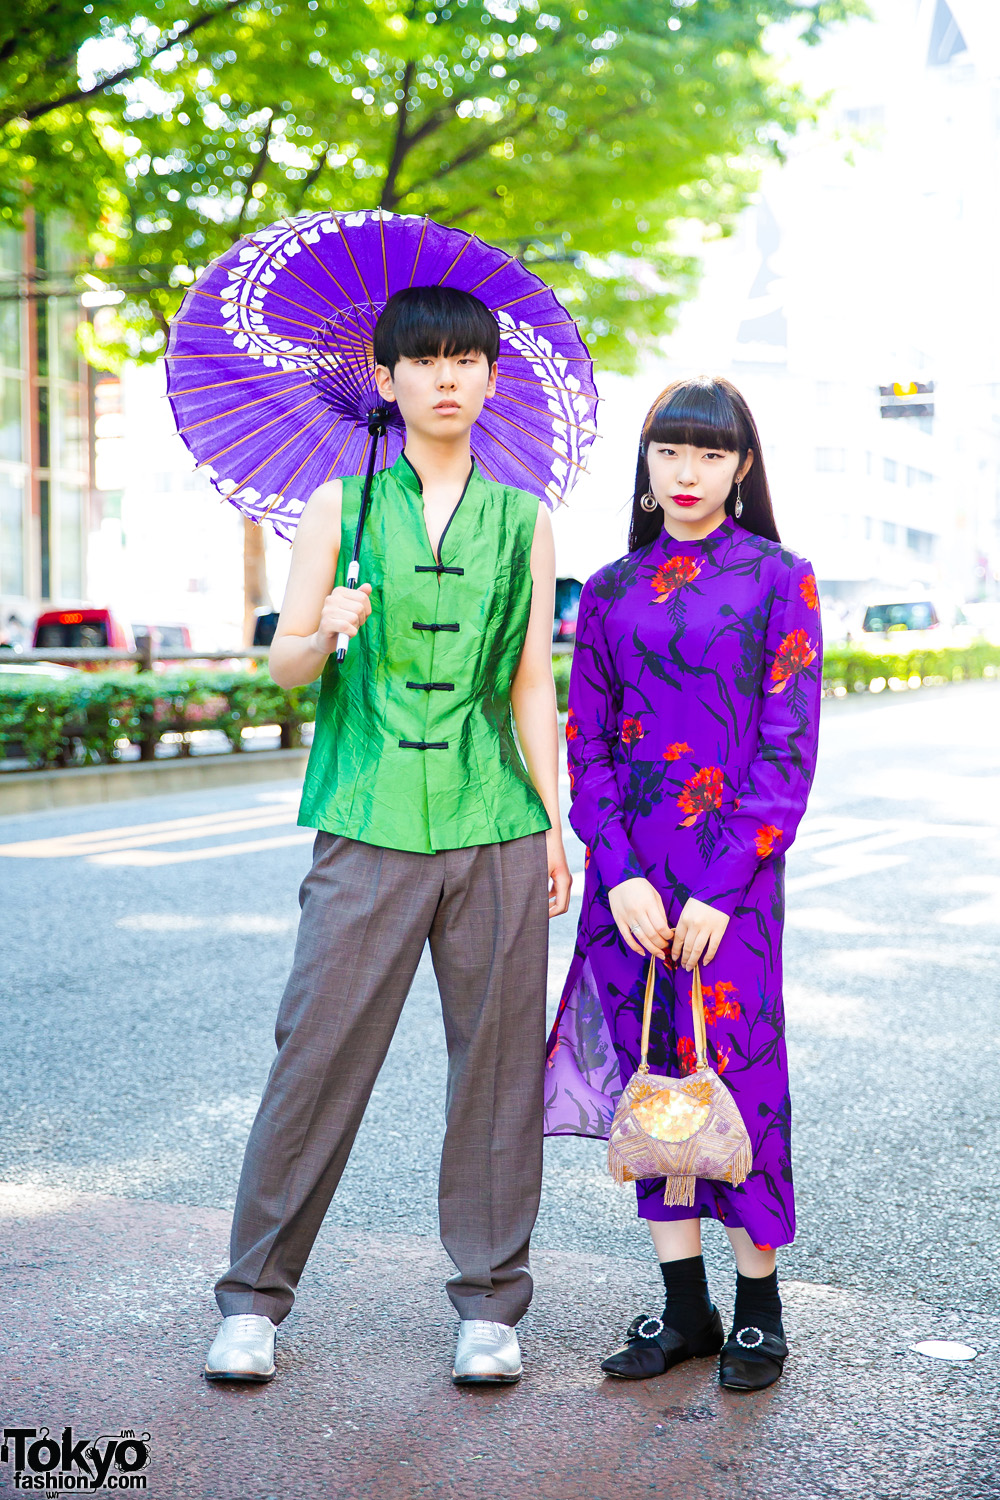 Purple Japanese Parasol, Purple Floral Dress & Comme des Garcons 